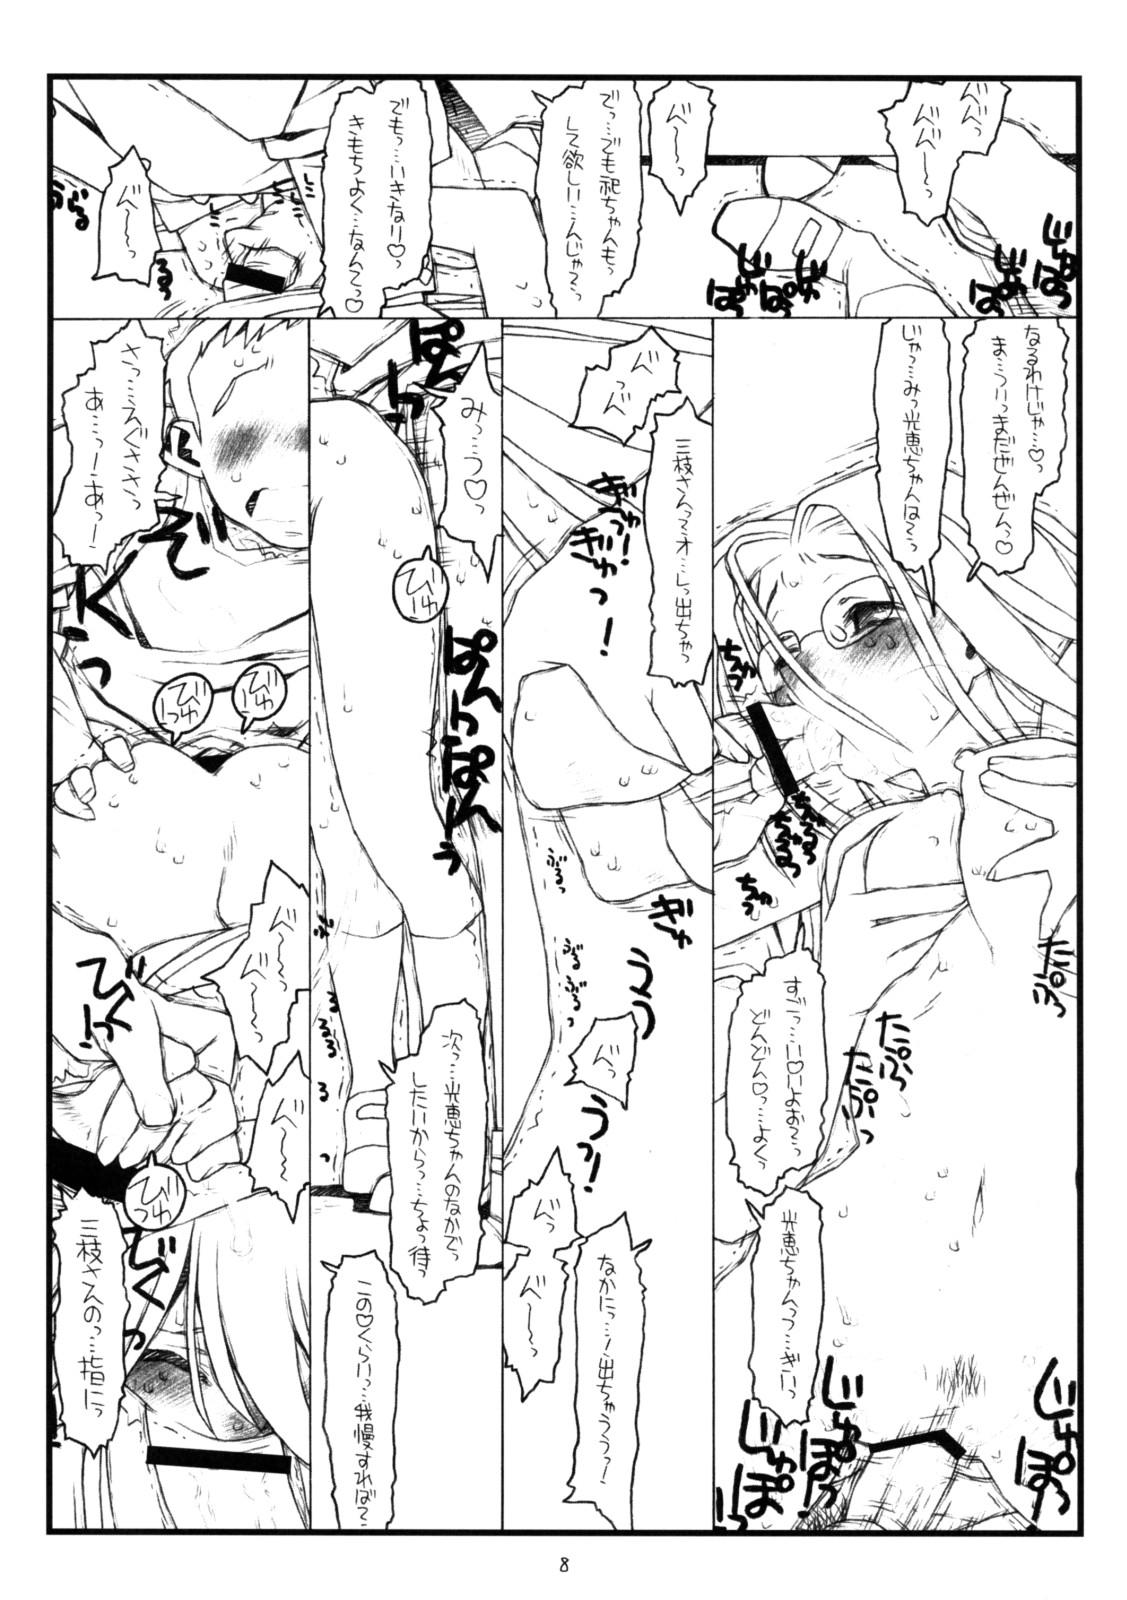 Hidden Camera Kamisama no Inai Tsuki - Kamichu Best Blowjob Ever - Page 7